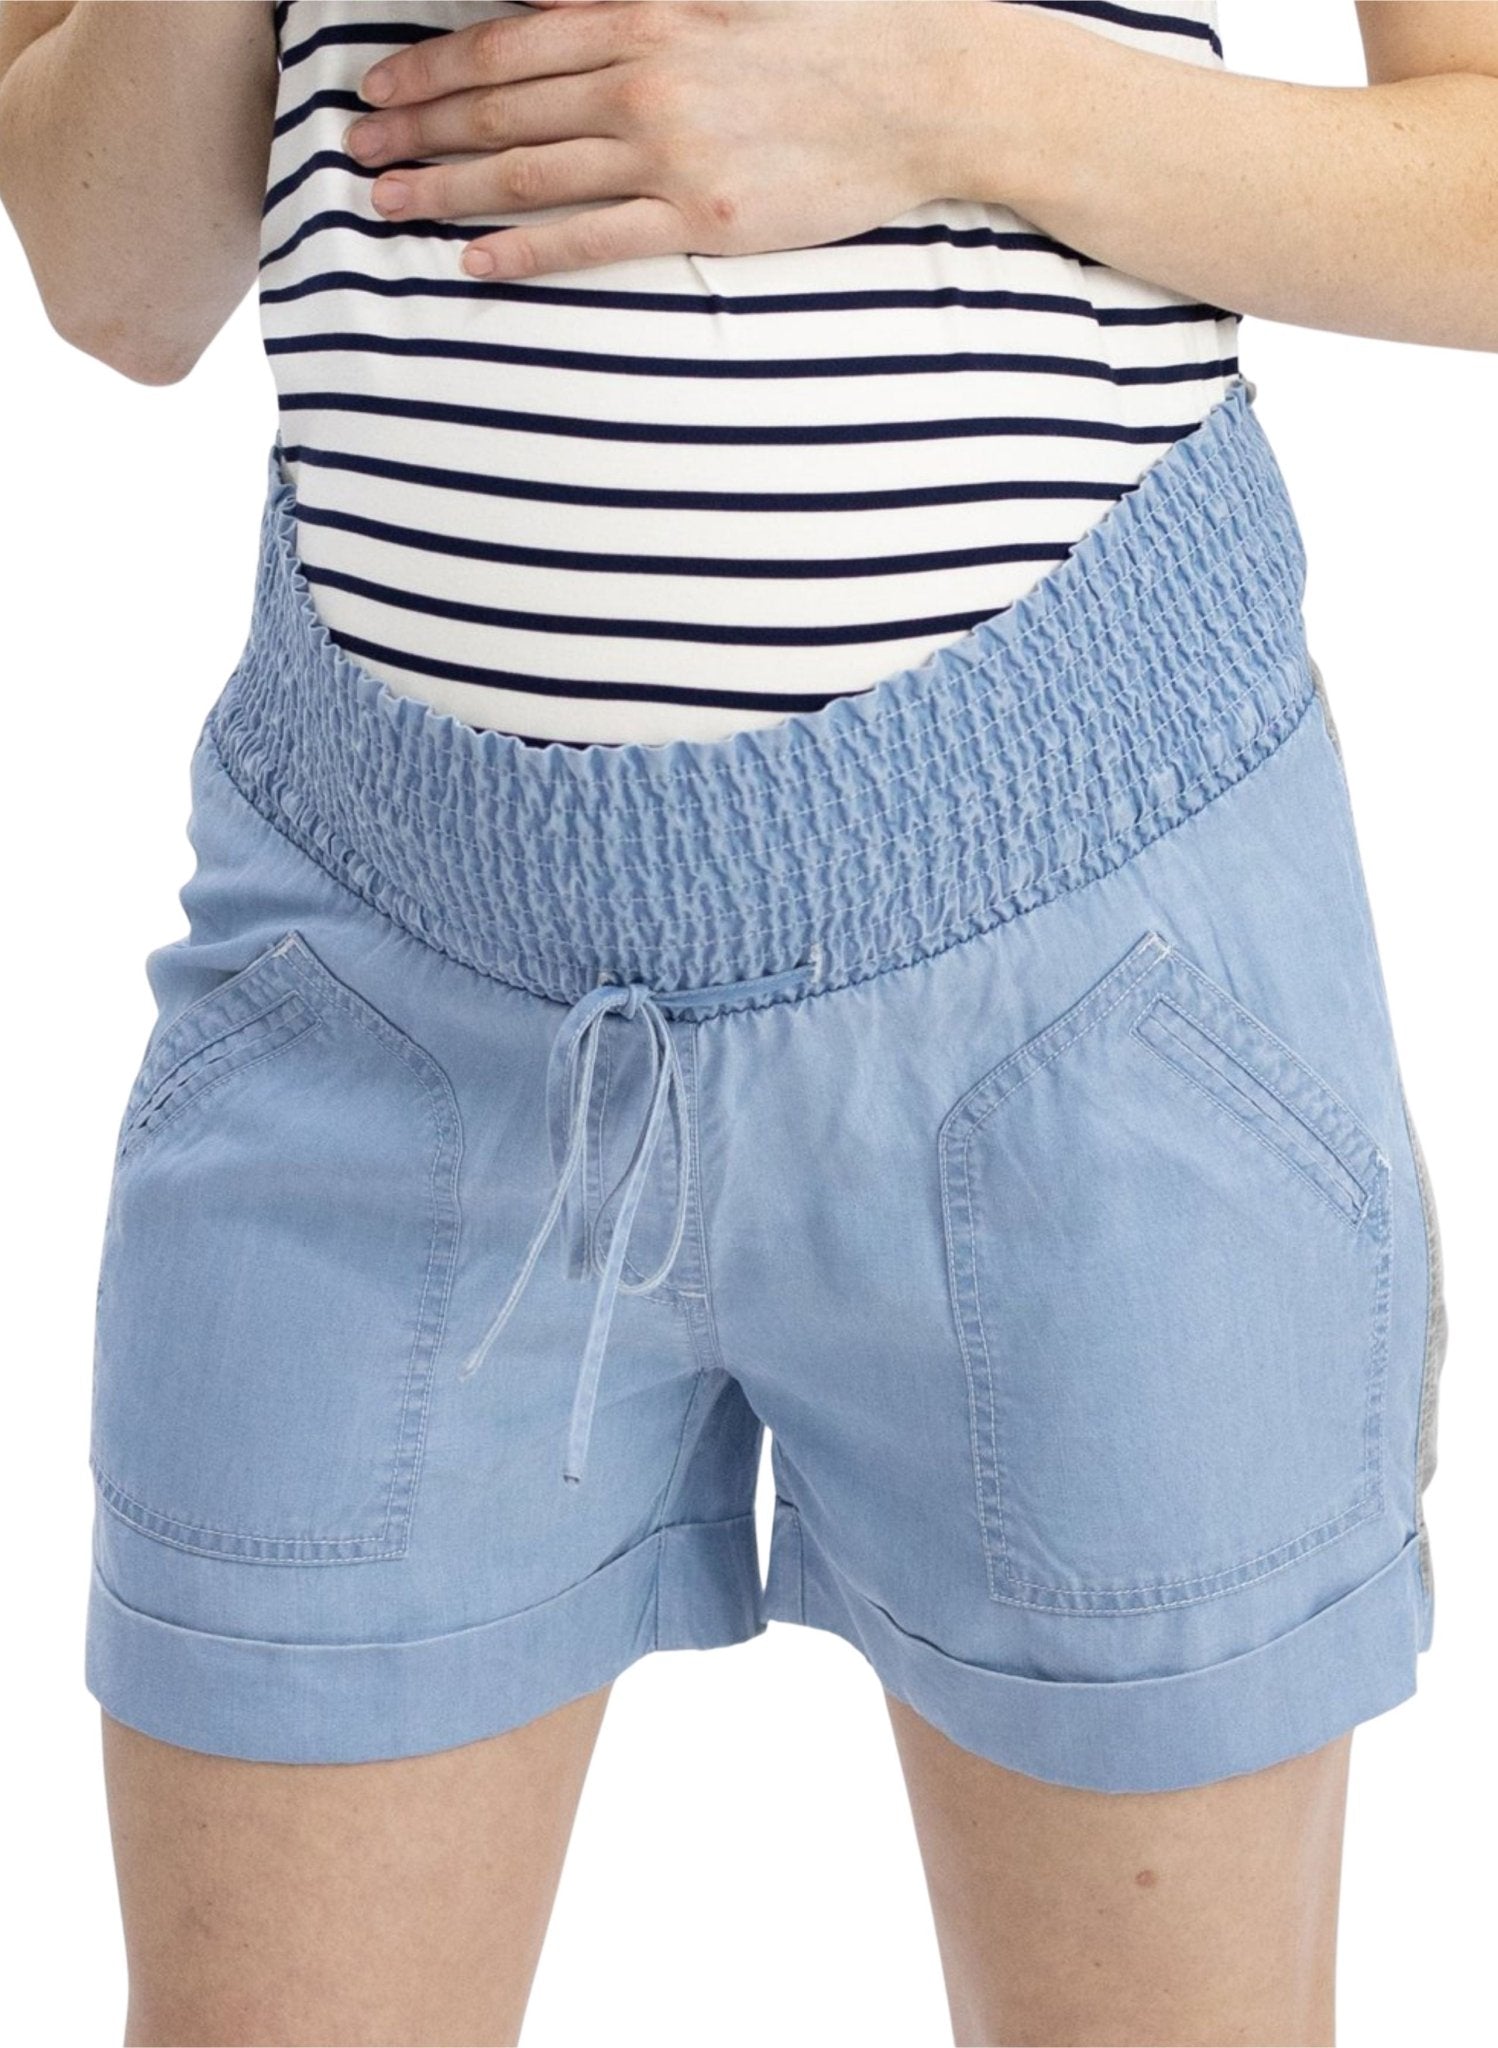 Maternity Tencel Summer Shorts - Chambray - Mums and Bumps